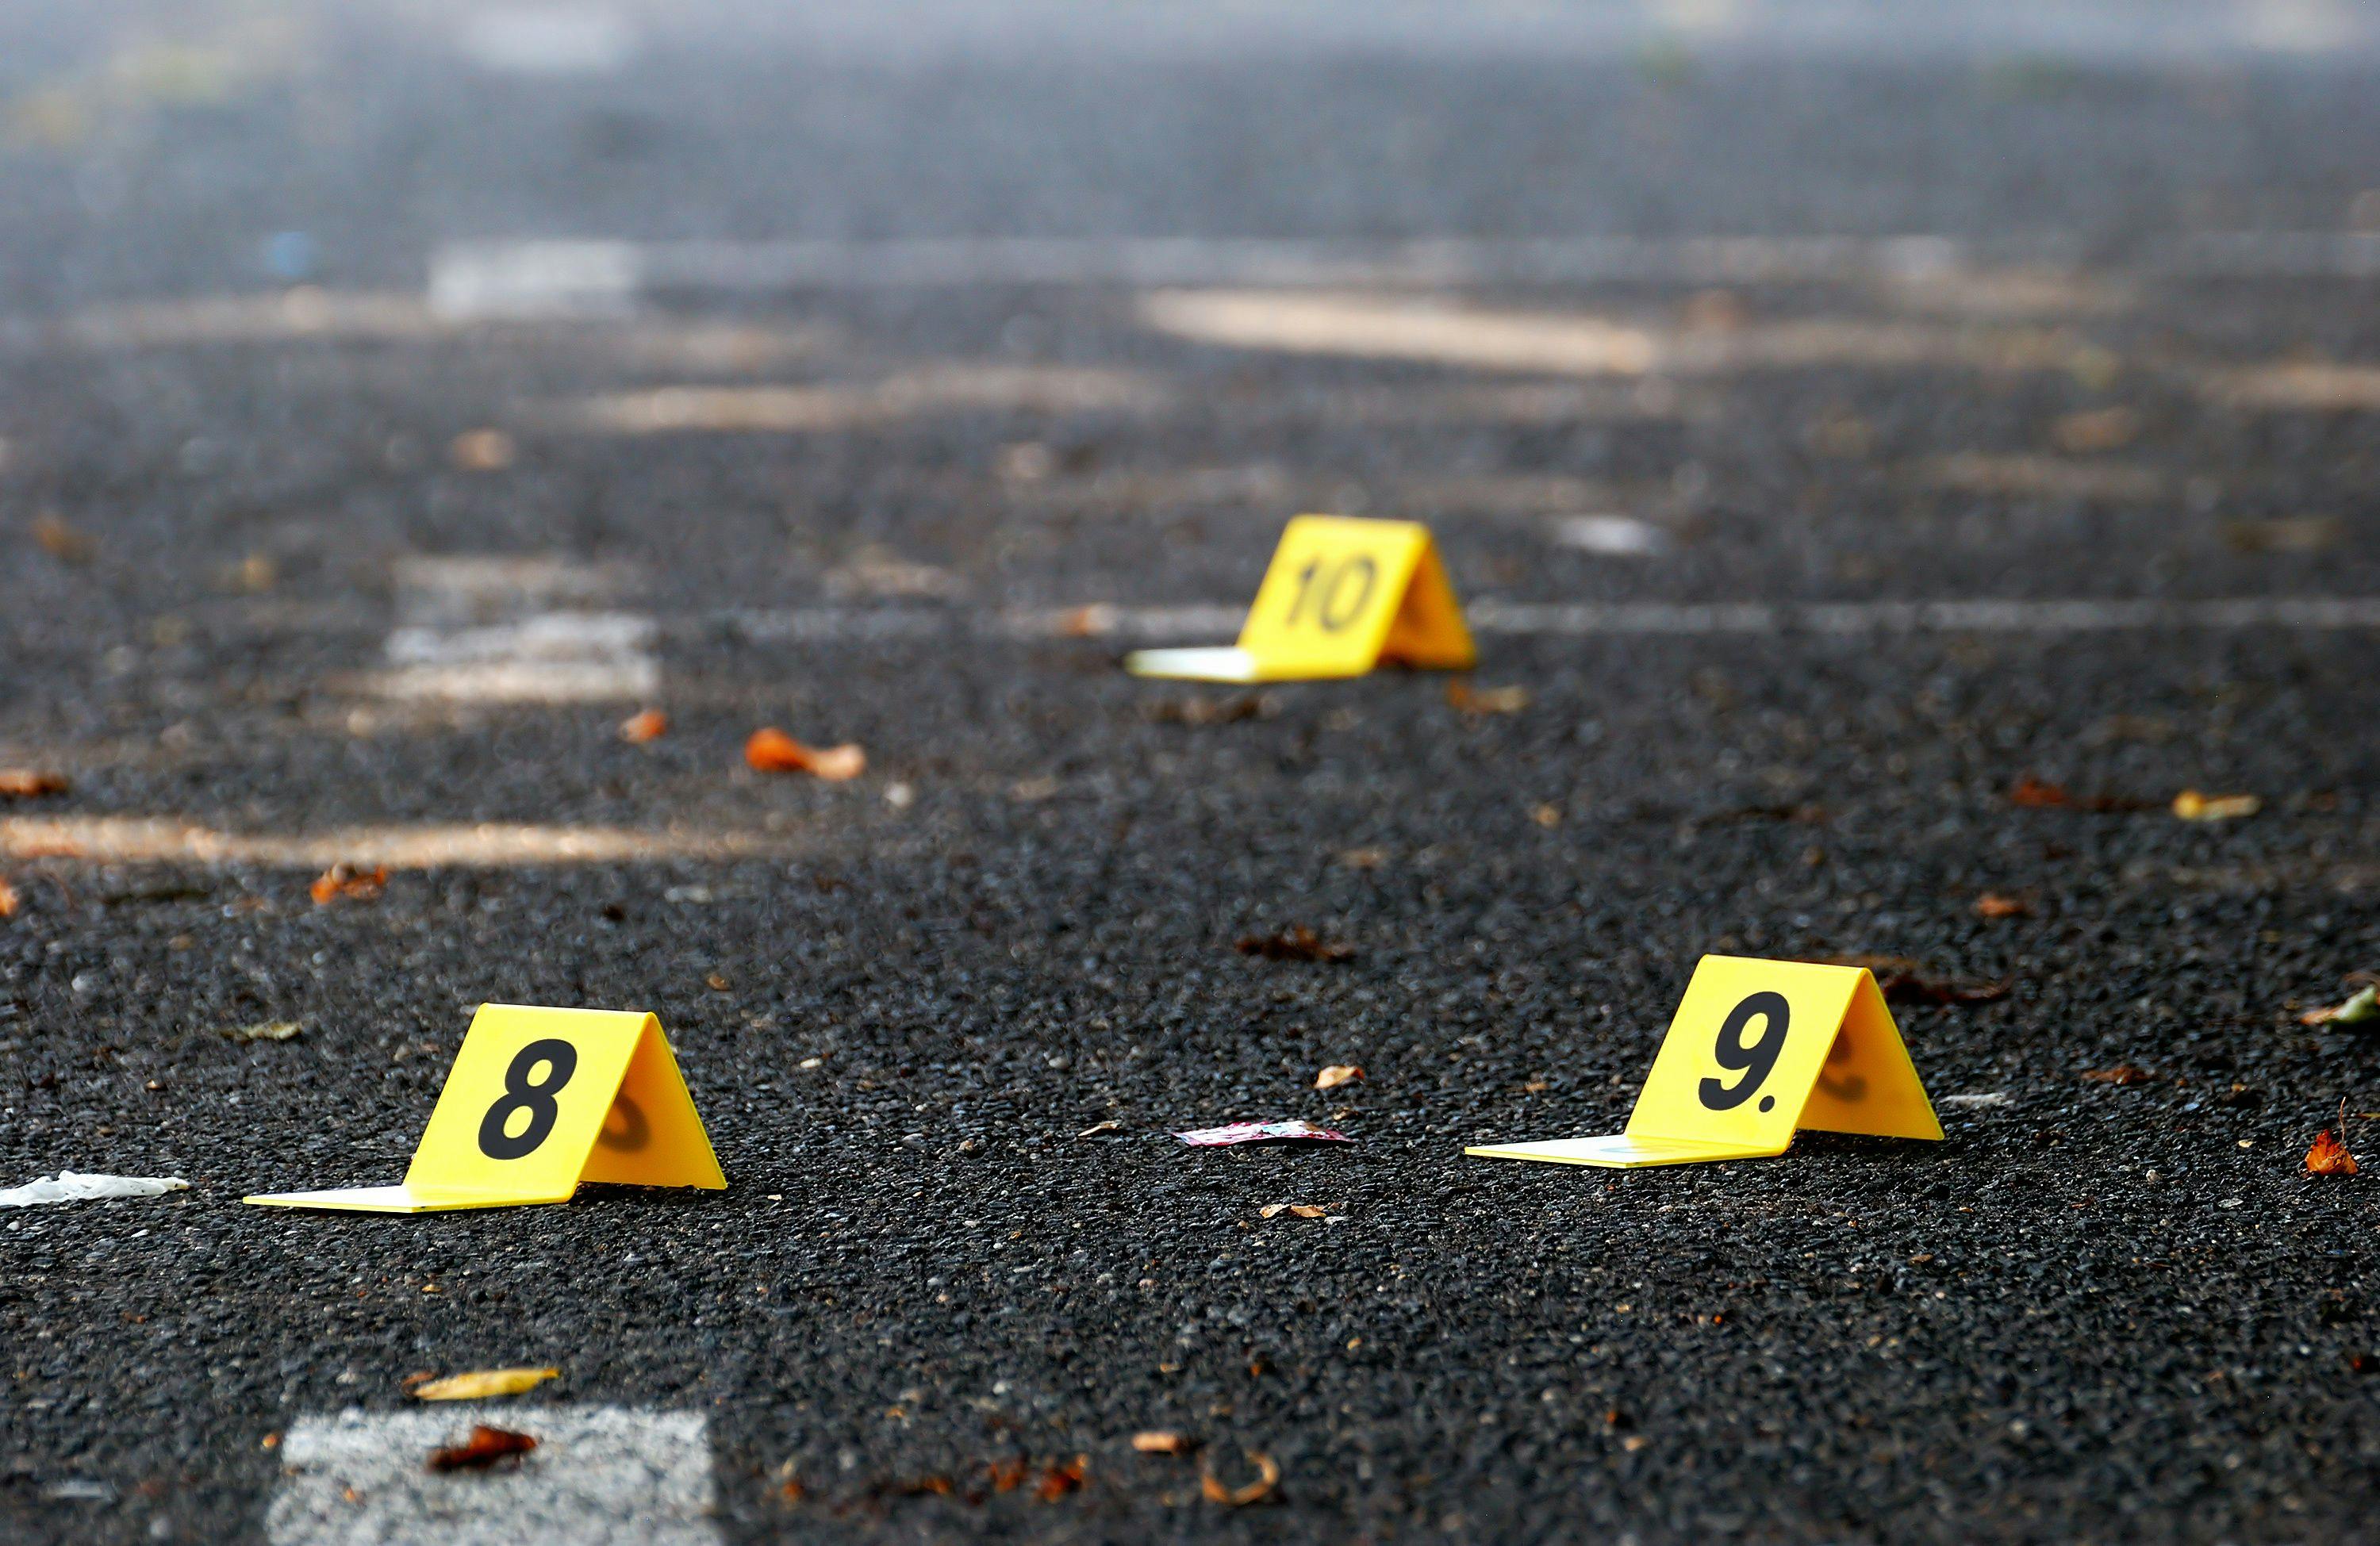 Crime Evidence Markers on Asphalt | Image Credit: © Forance - stock.adobe.com